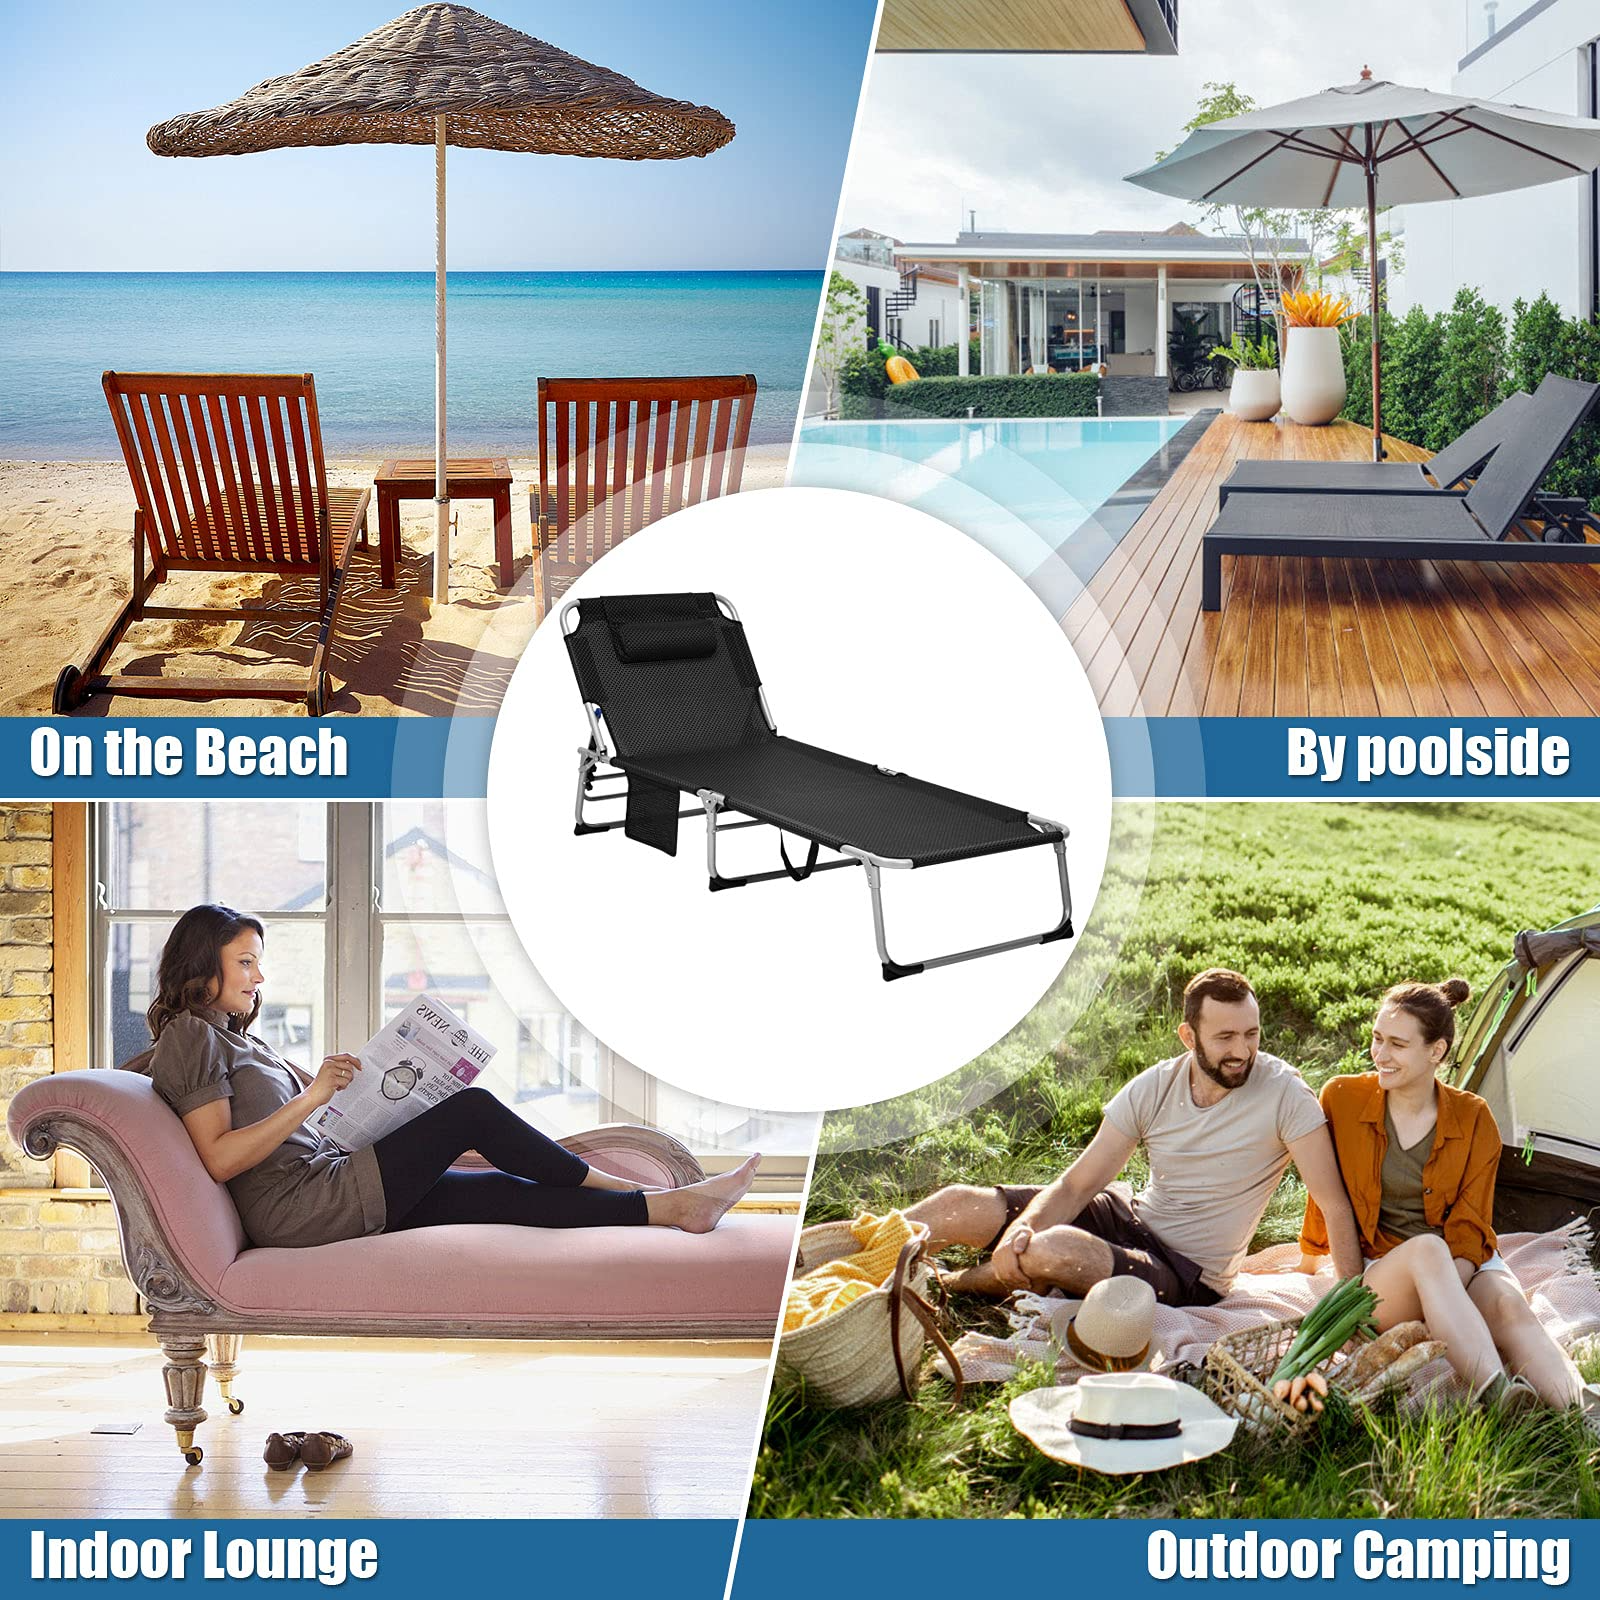 Giantex Lounge Chair Chaise Lounger, Beach Recliner with Mattress